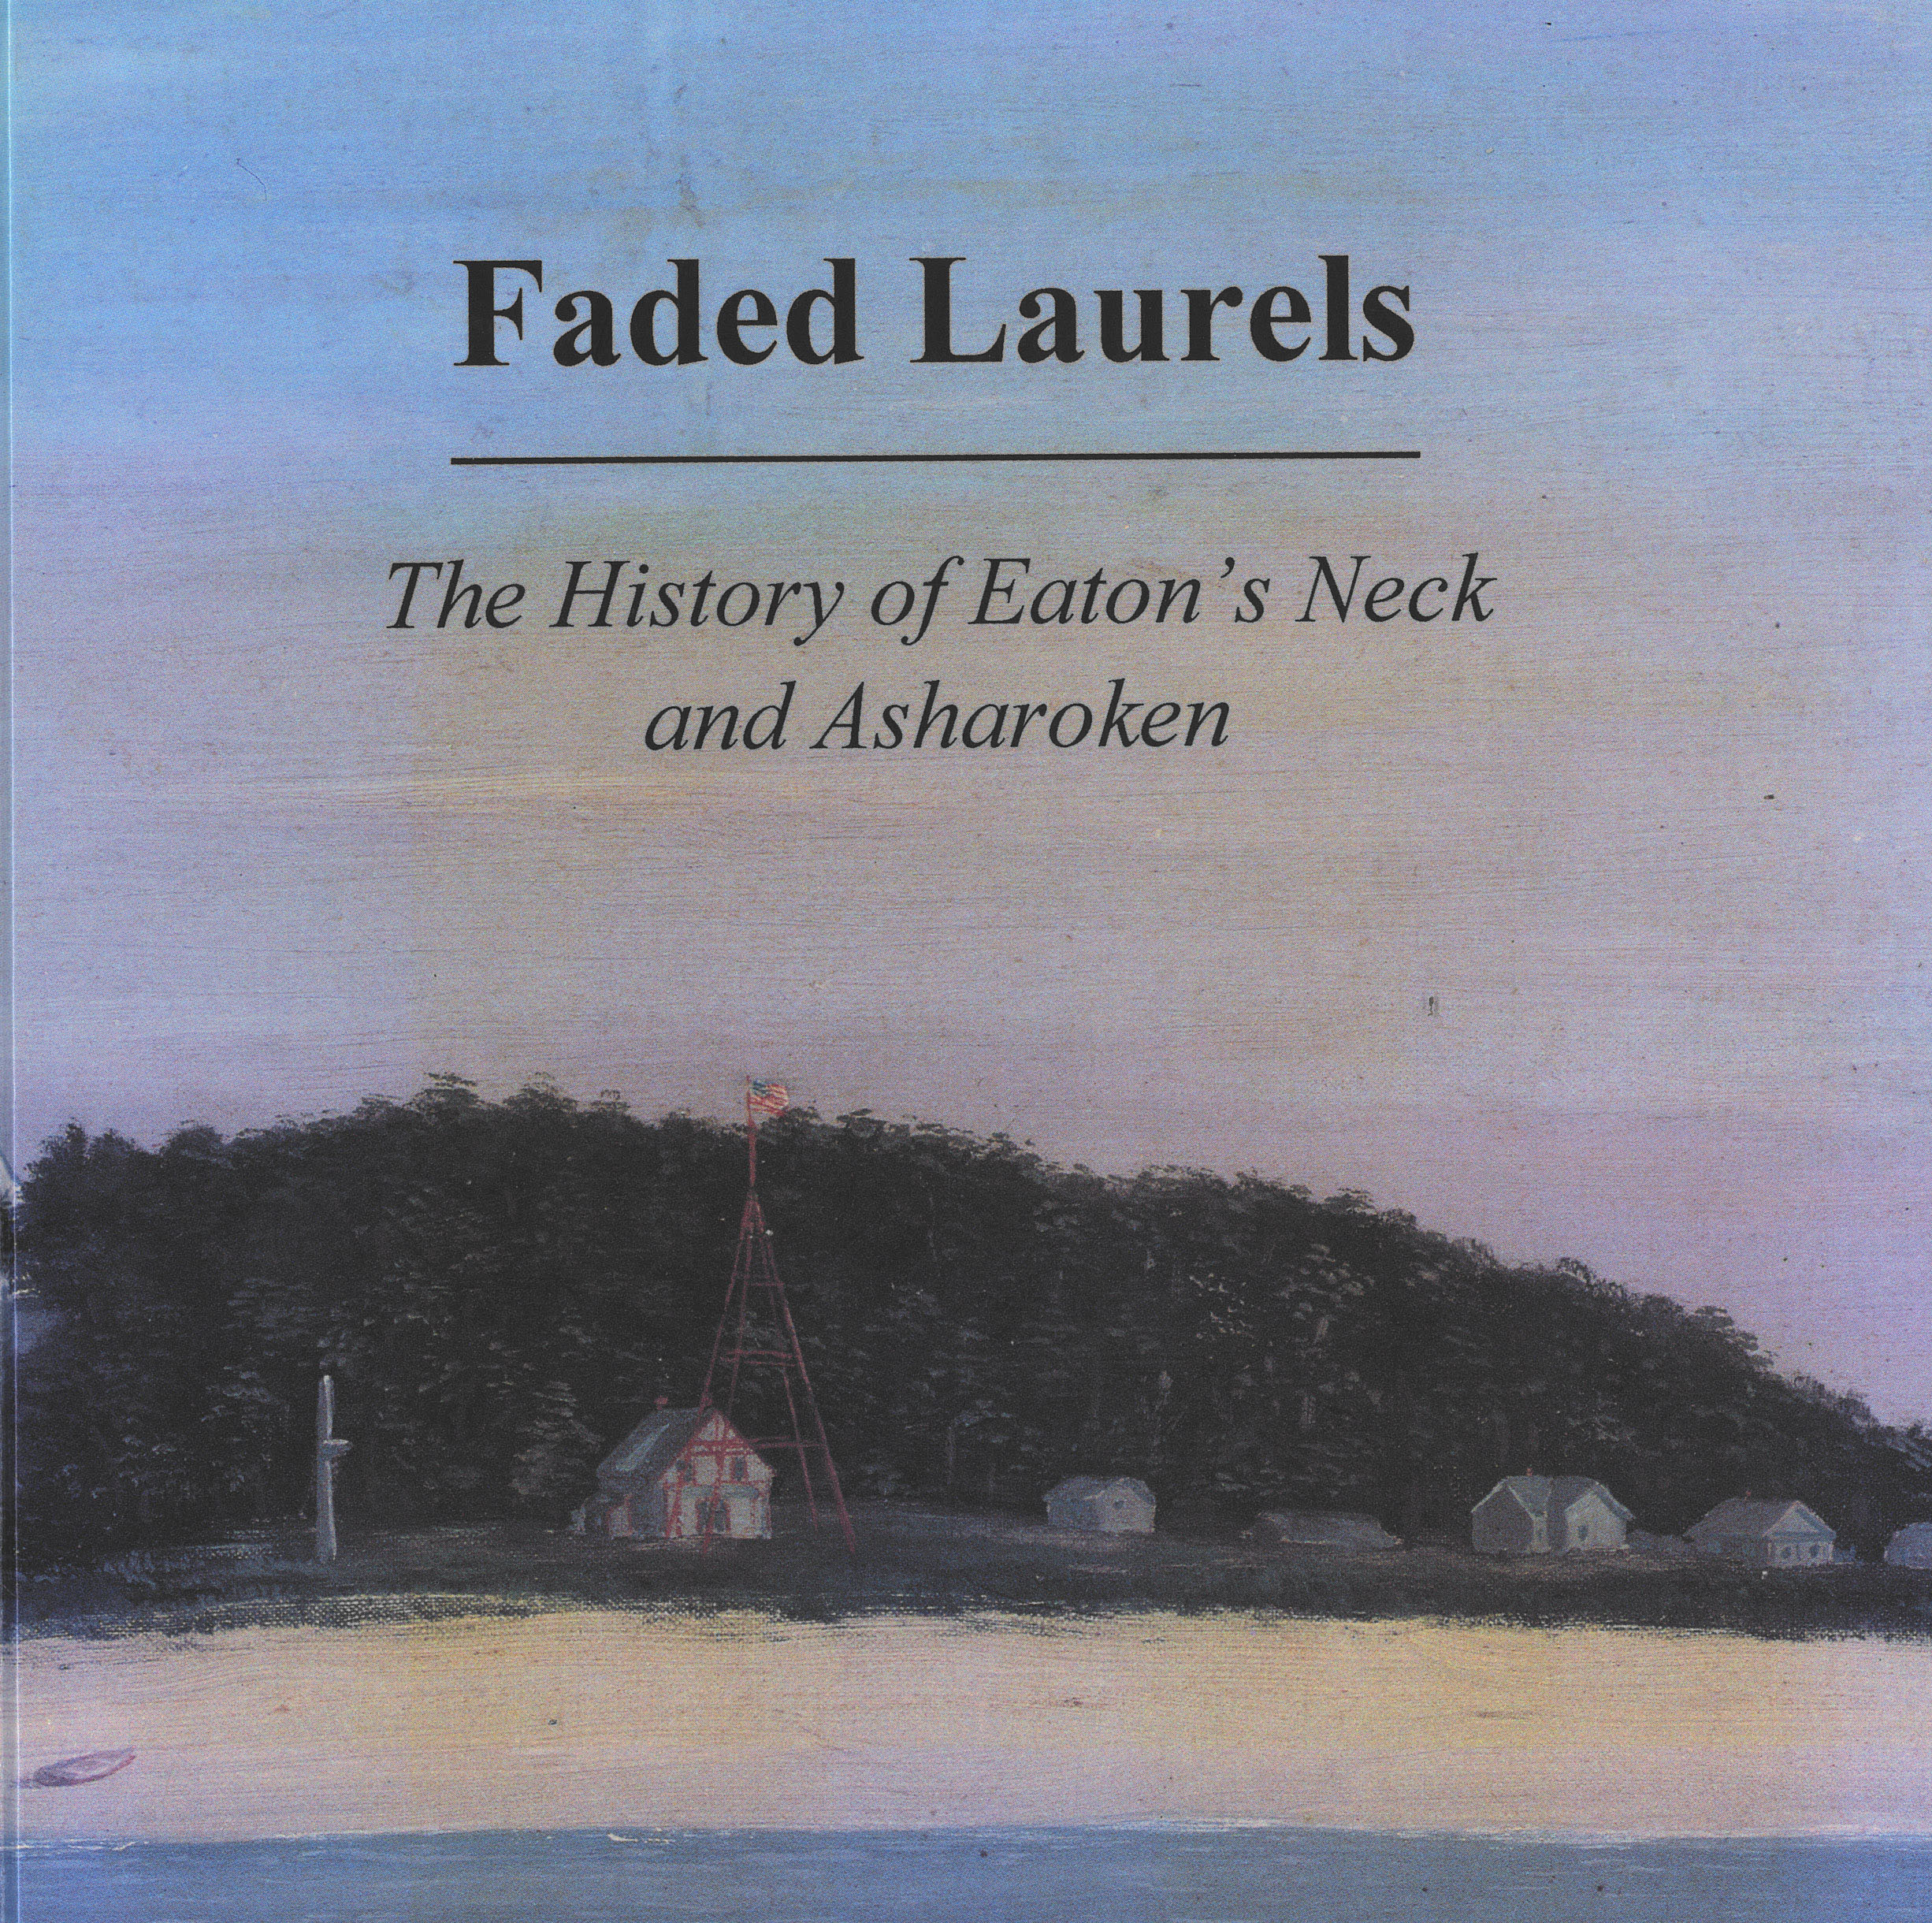 Faded Laurels